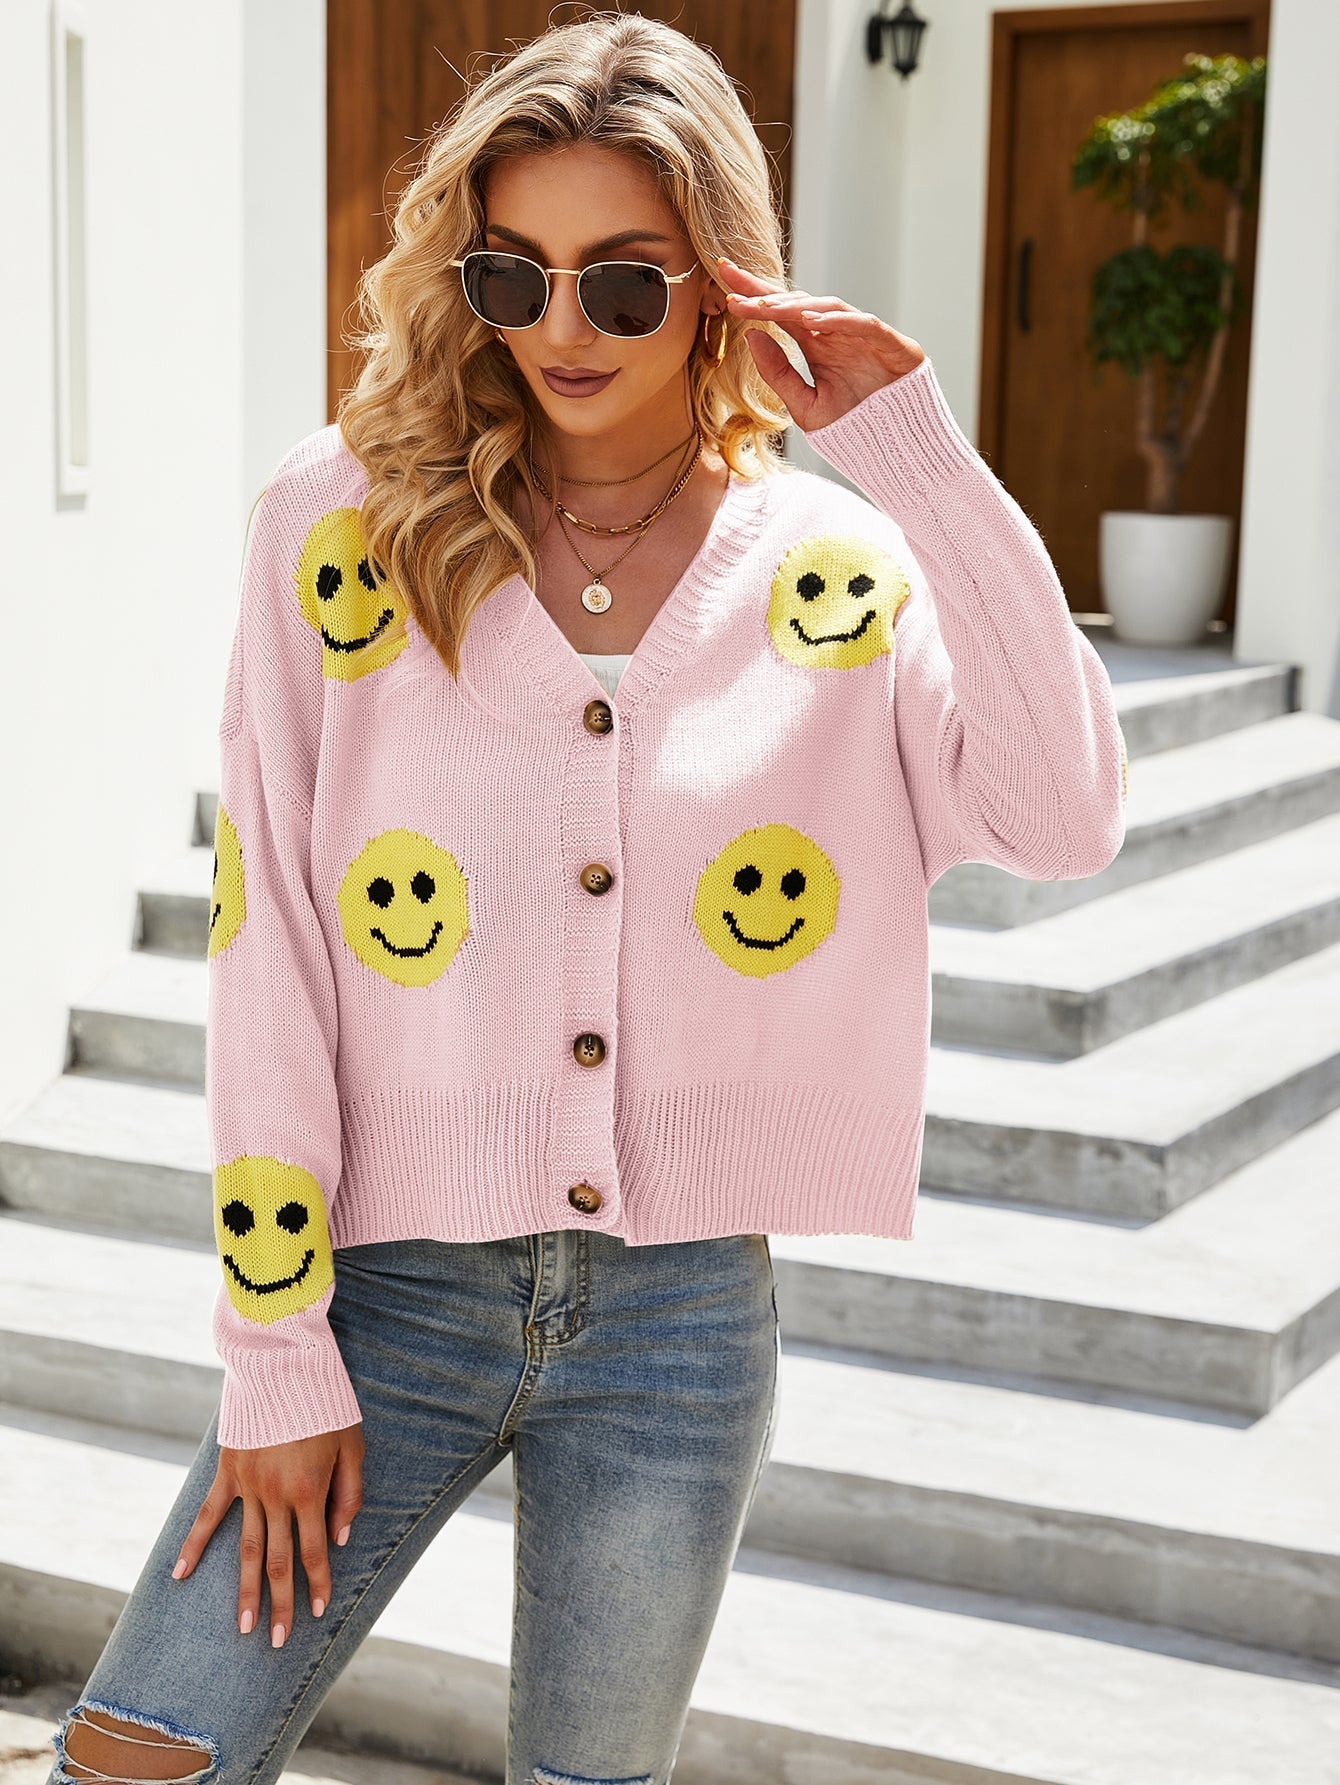 Women's Smiley Face Pattern Sweater Cardigan Long Sleeve Loose Knit Sweater Jacket Sai Feel